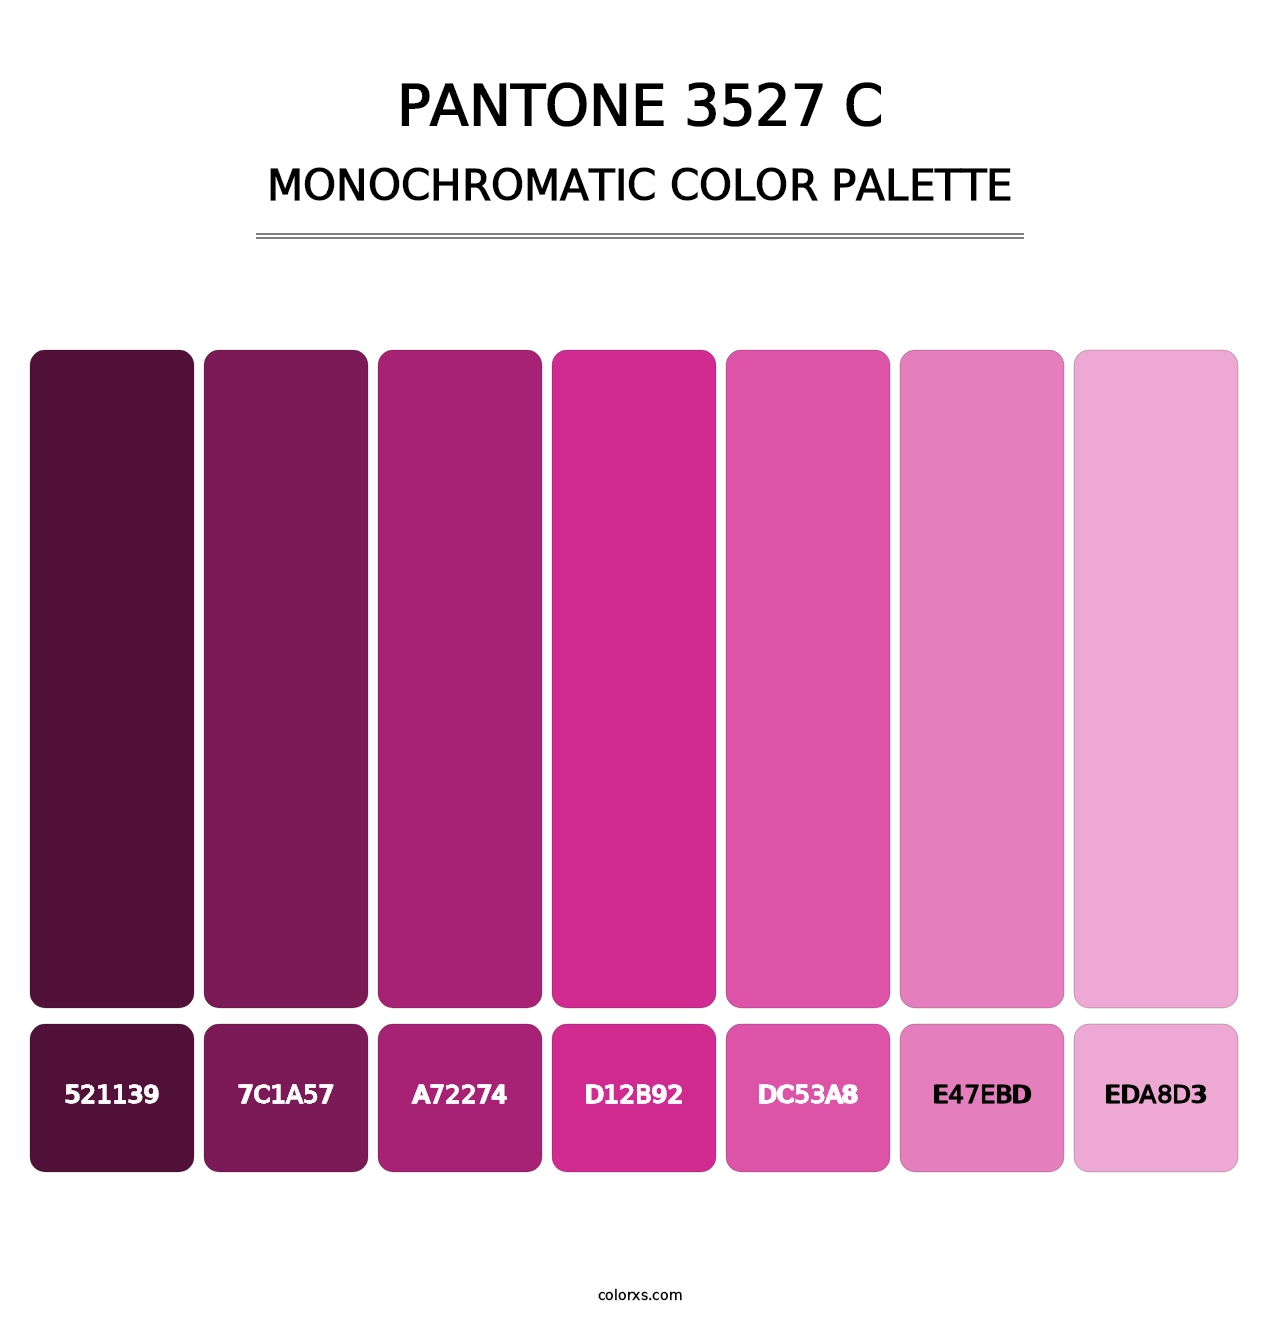 PANTONE 3527 C - Monochromatic Color Palette